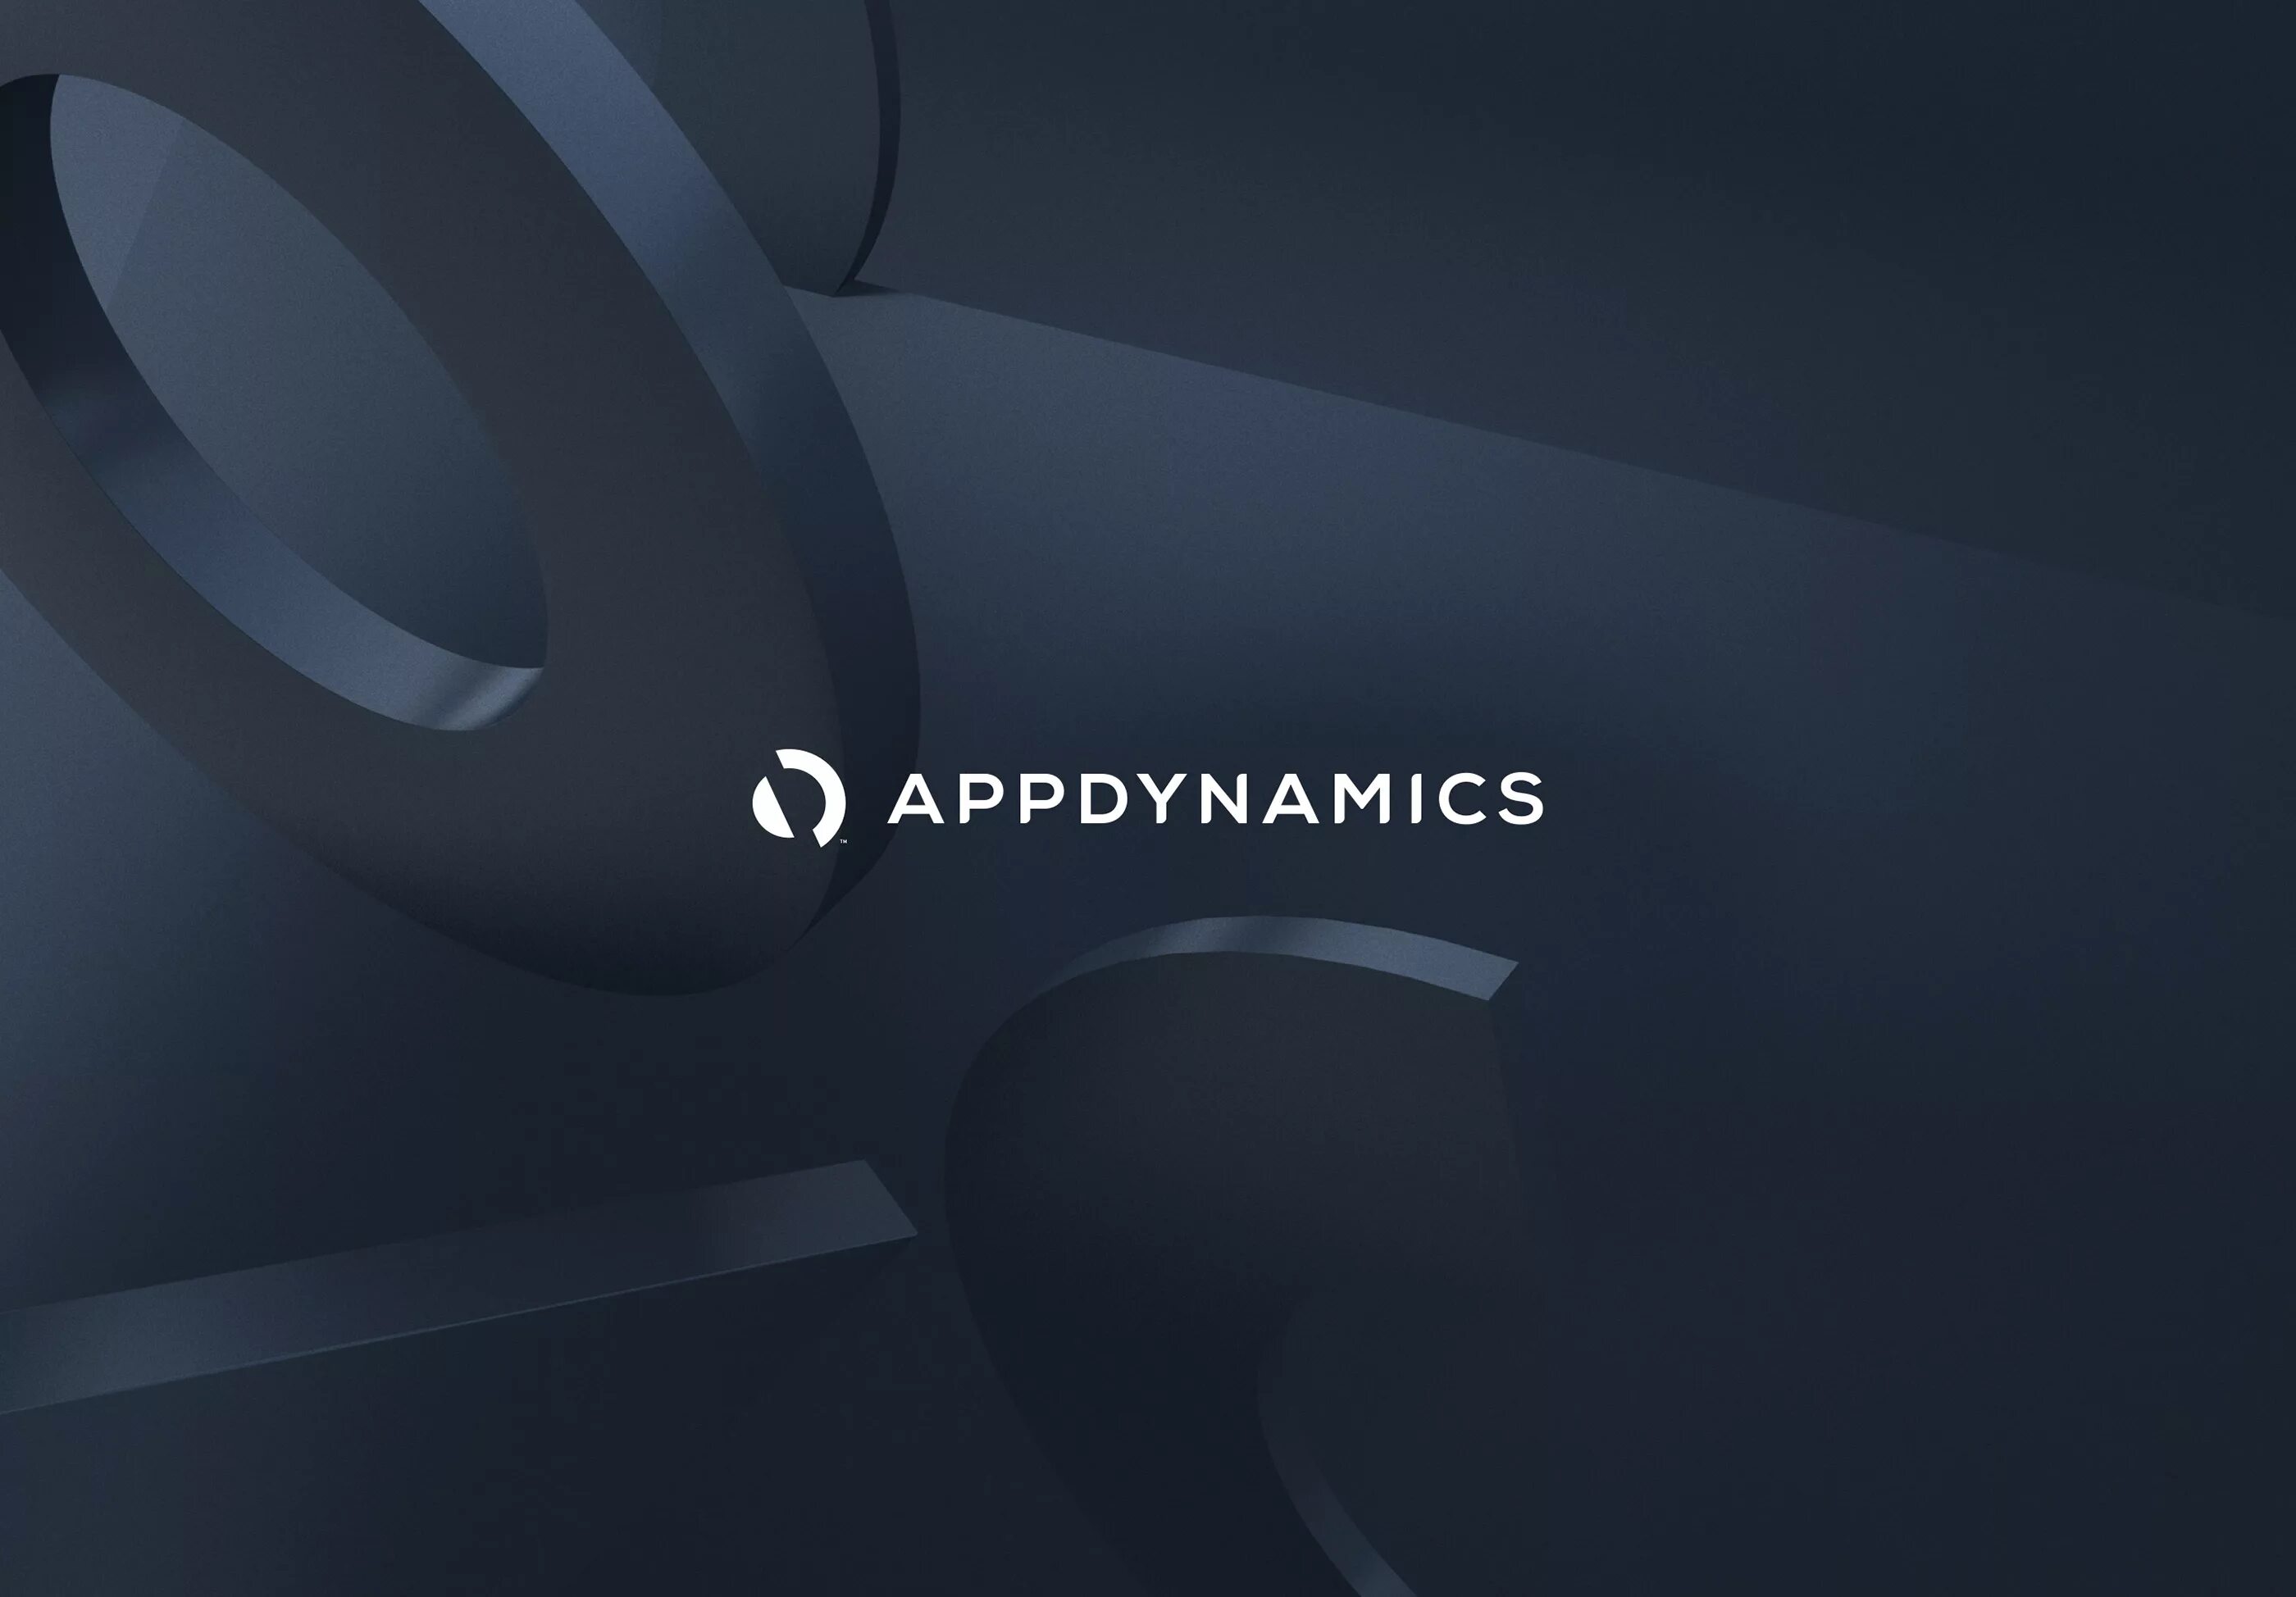 App dynamics. APPDYNAMICS. APPDYNAMICS logo. APPDYNAMICS ads.